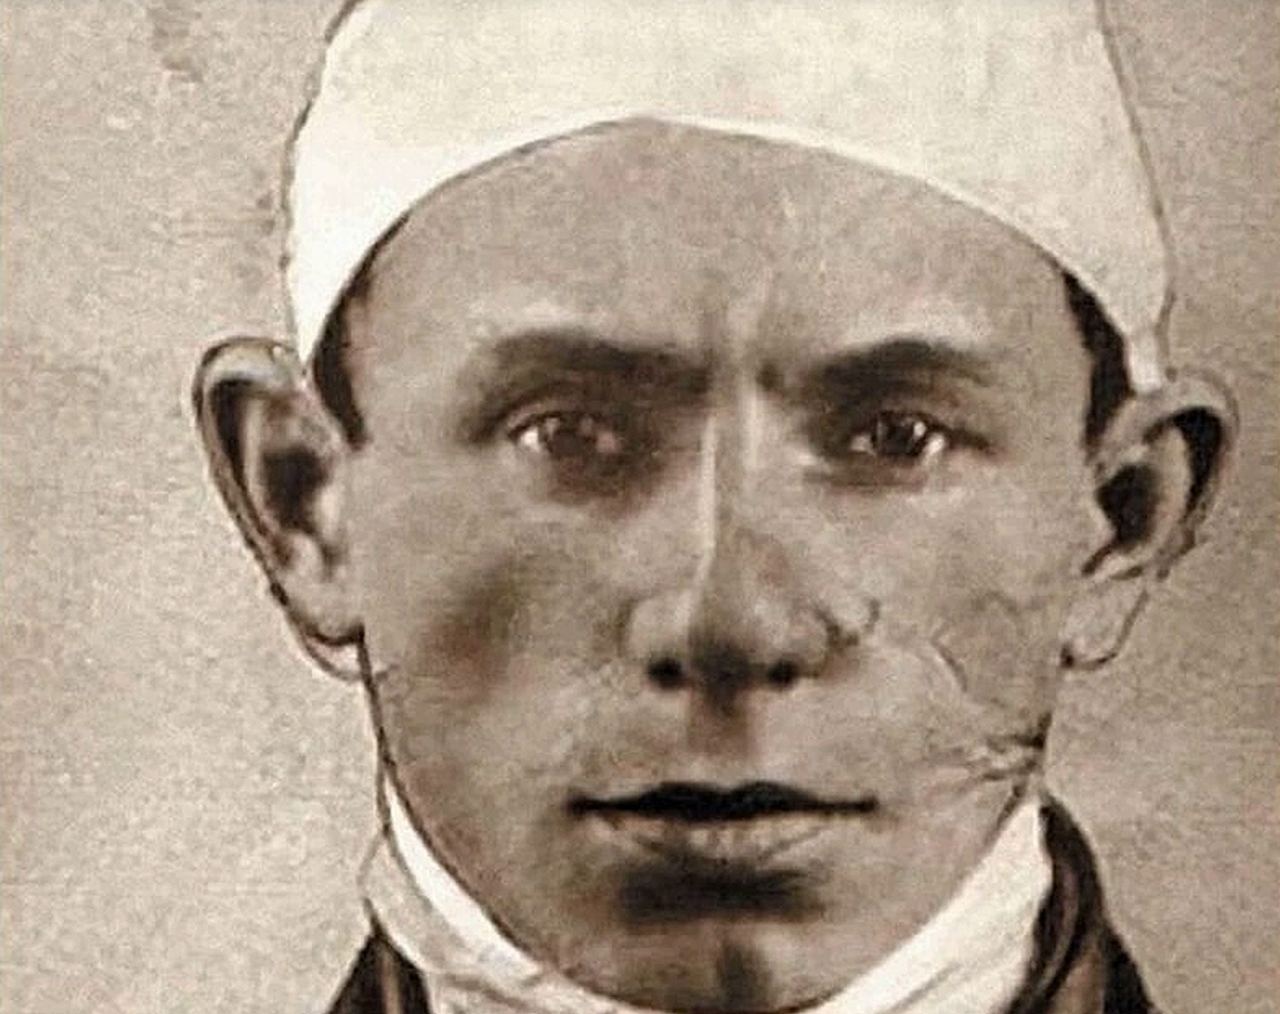 фотография Лёньки Пантелеева после задержания в 1922 году. Фрагмент 